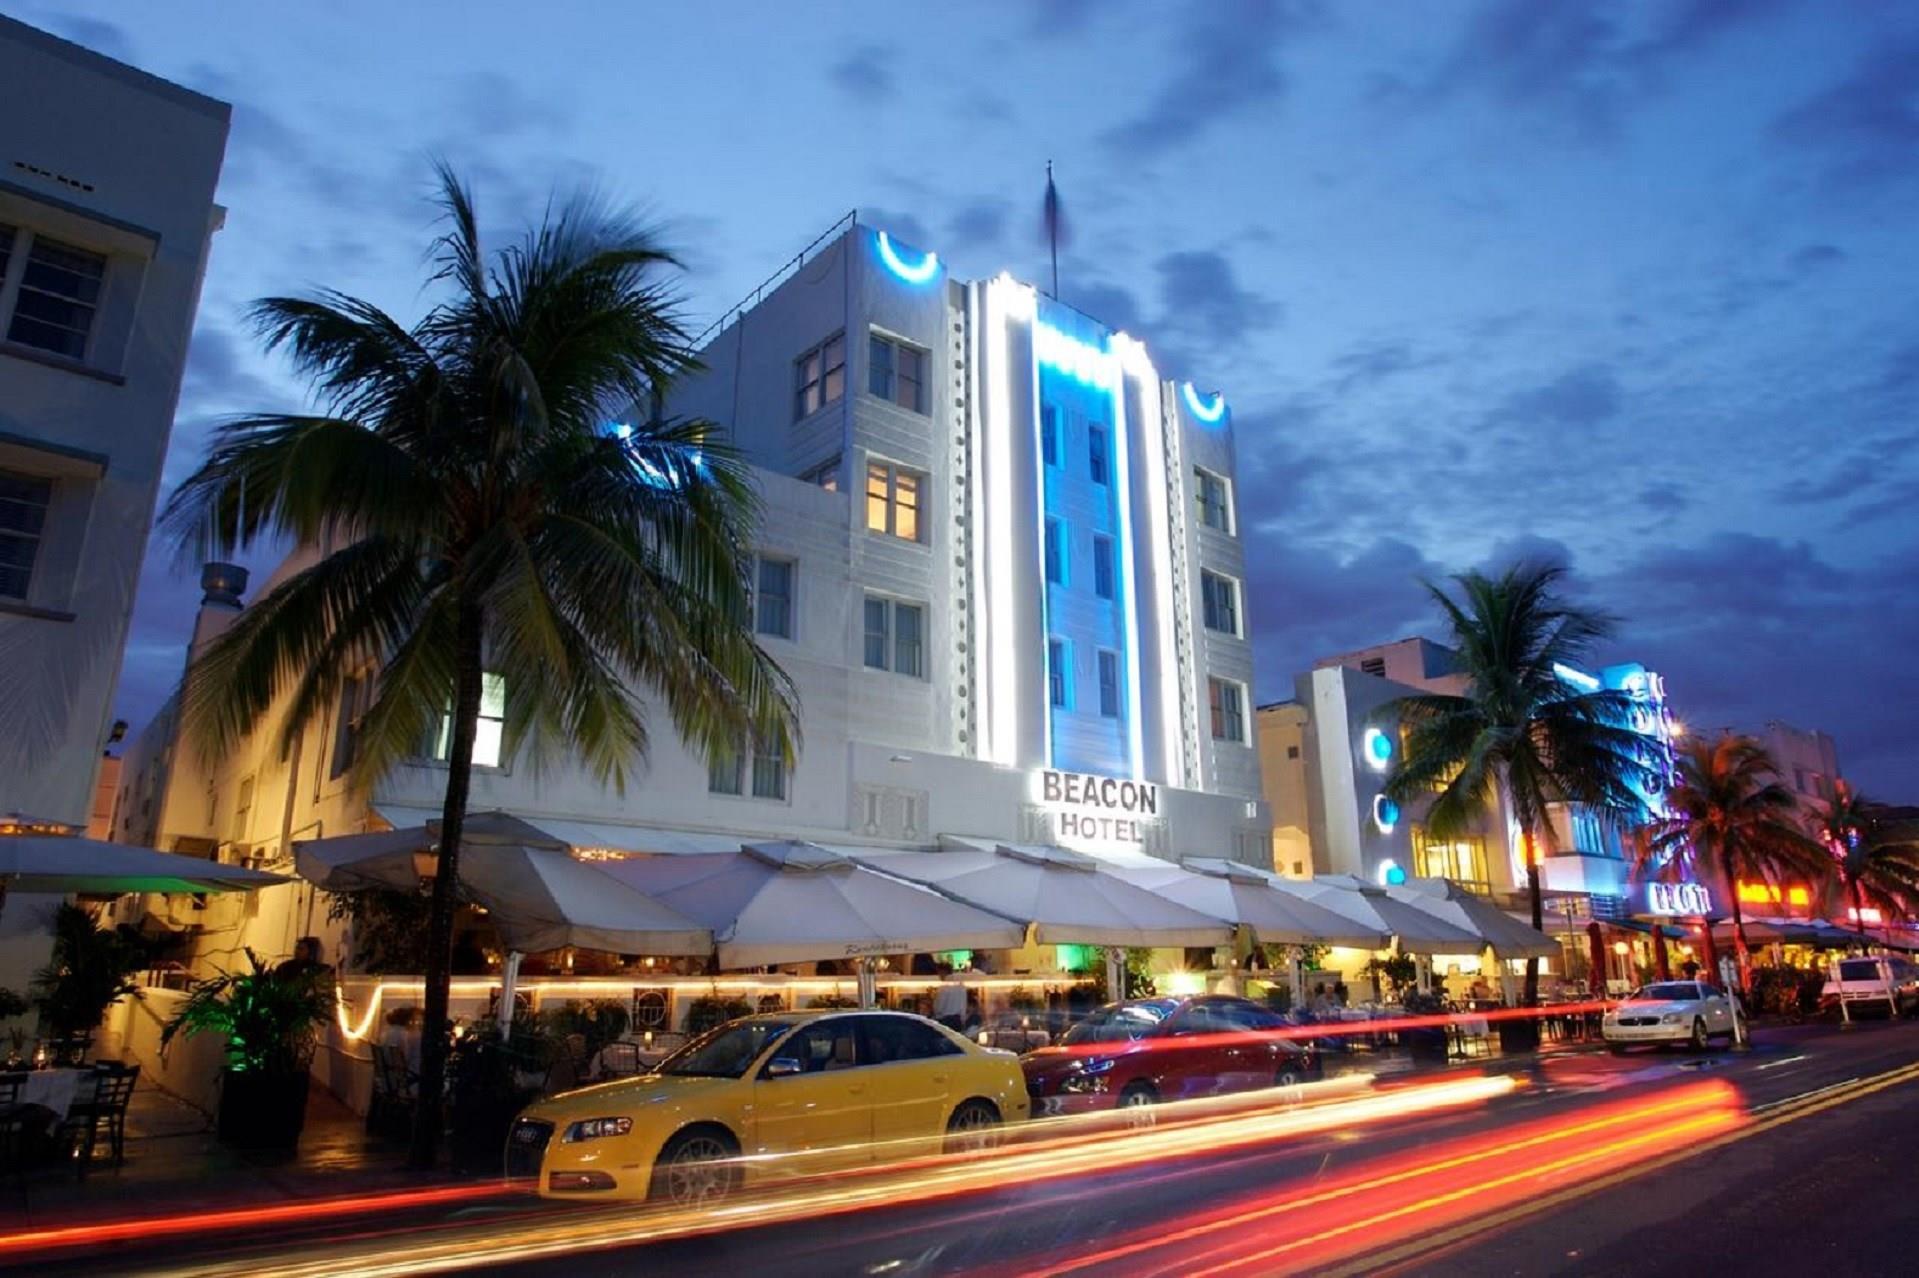 Beacon South Beach Hotel in Miami Beach, FL